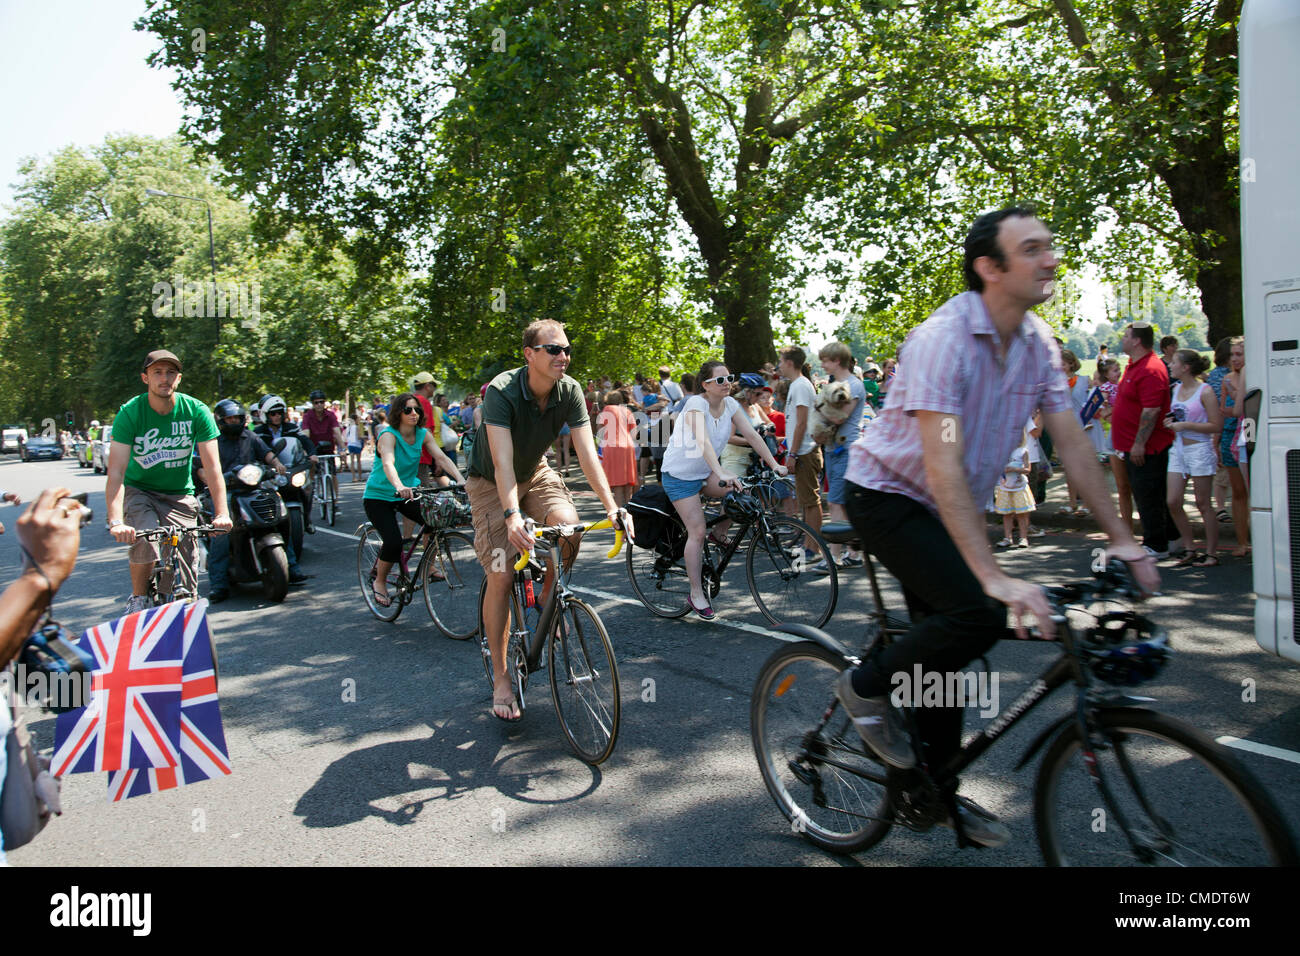 26 juillet 2012, le relais de la Flamme Olympique, Clapham Common, London, UK - 12.59 H - Les gens suivent la procession du relais de la flamme à l'arrière sur leurs bicyclettes Banque D'Images